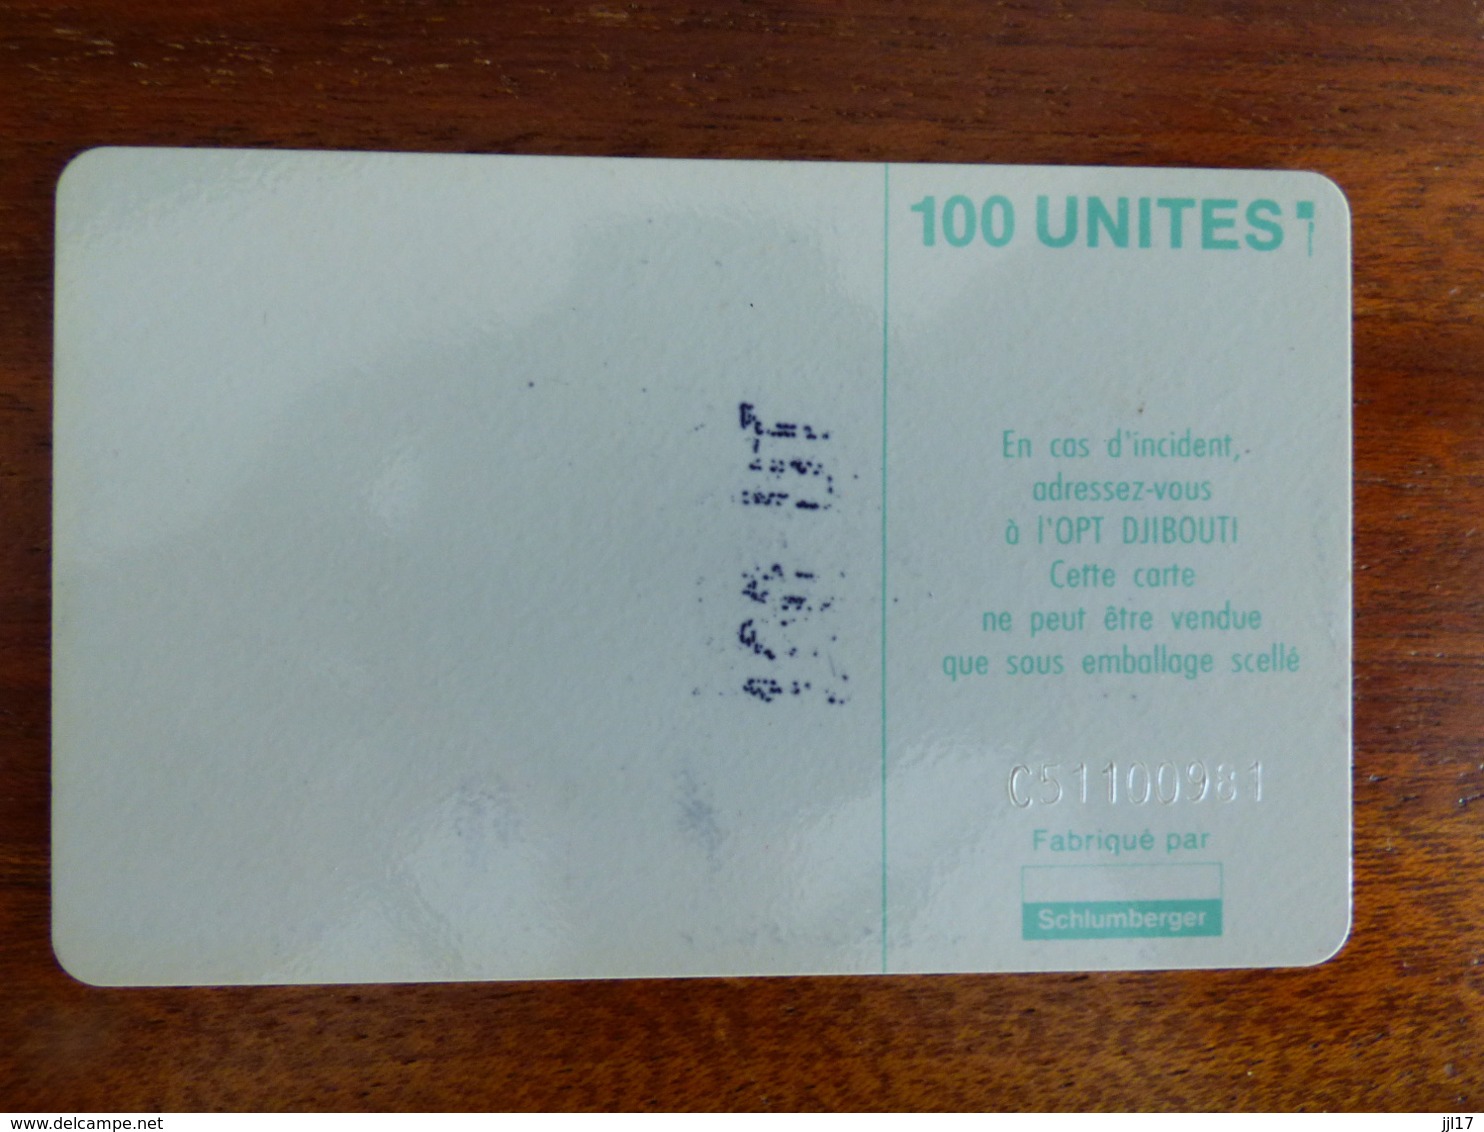 Télécarte De Djibouti - 100U - SC5 ISO - Sans Trou Au Verso - N° C51100981 - Gibuti